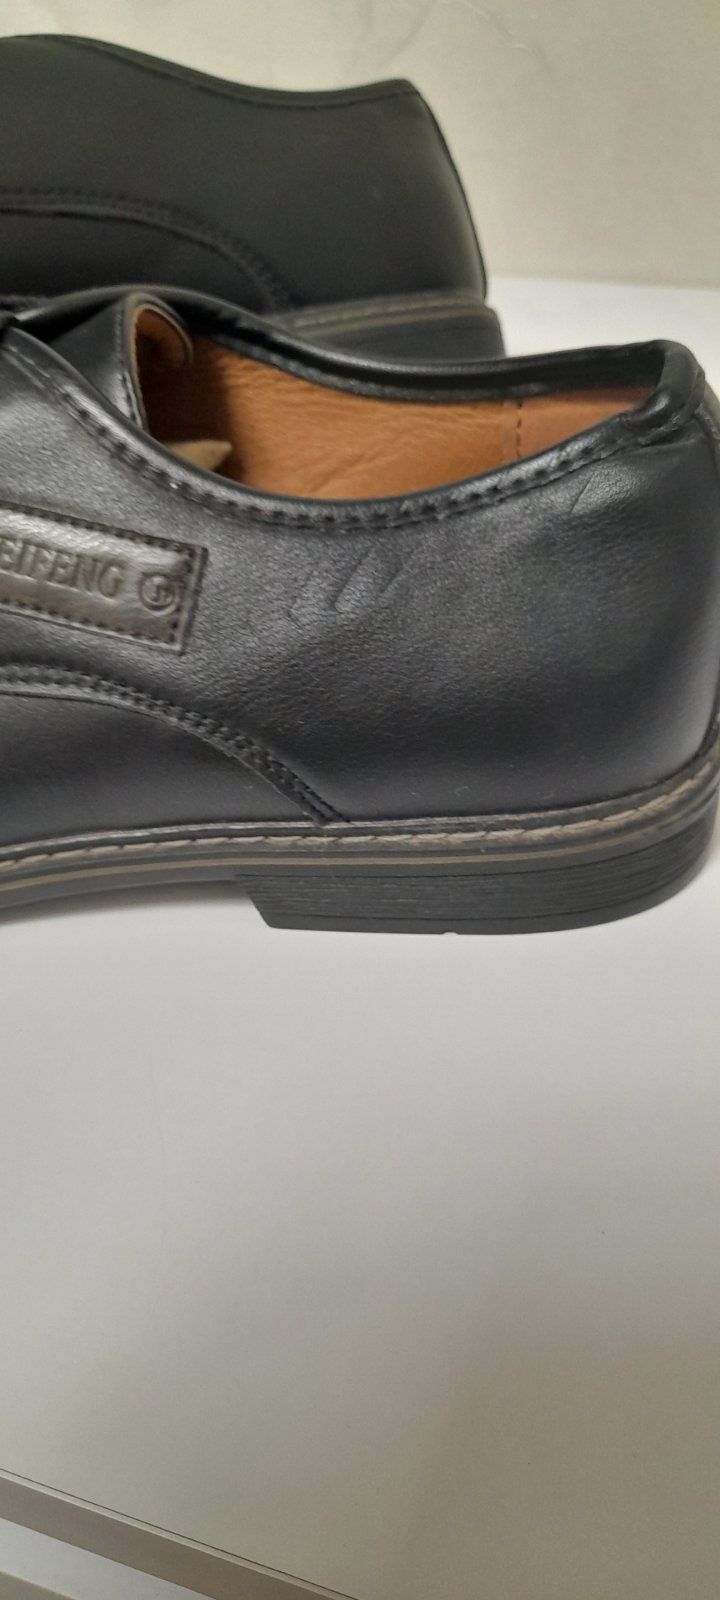 Продам нове чоловіче модельне взуття з невеличким дефектом,дефект видн